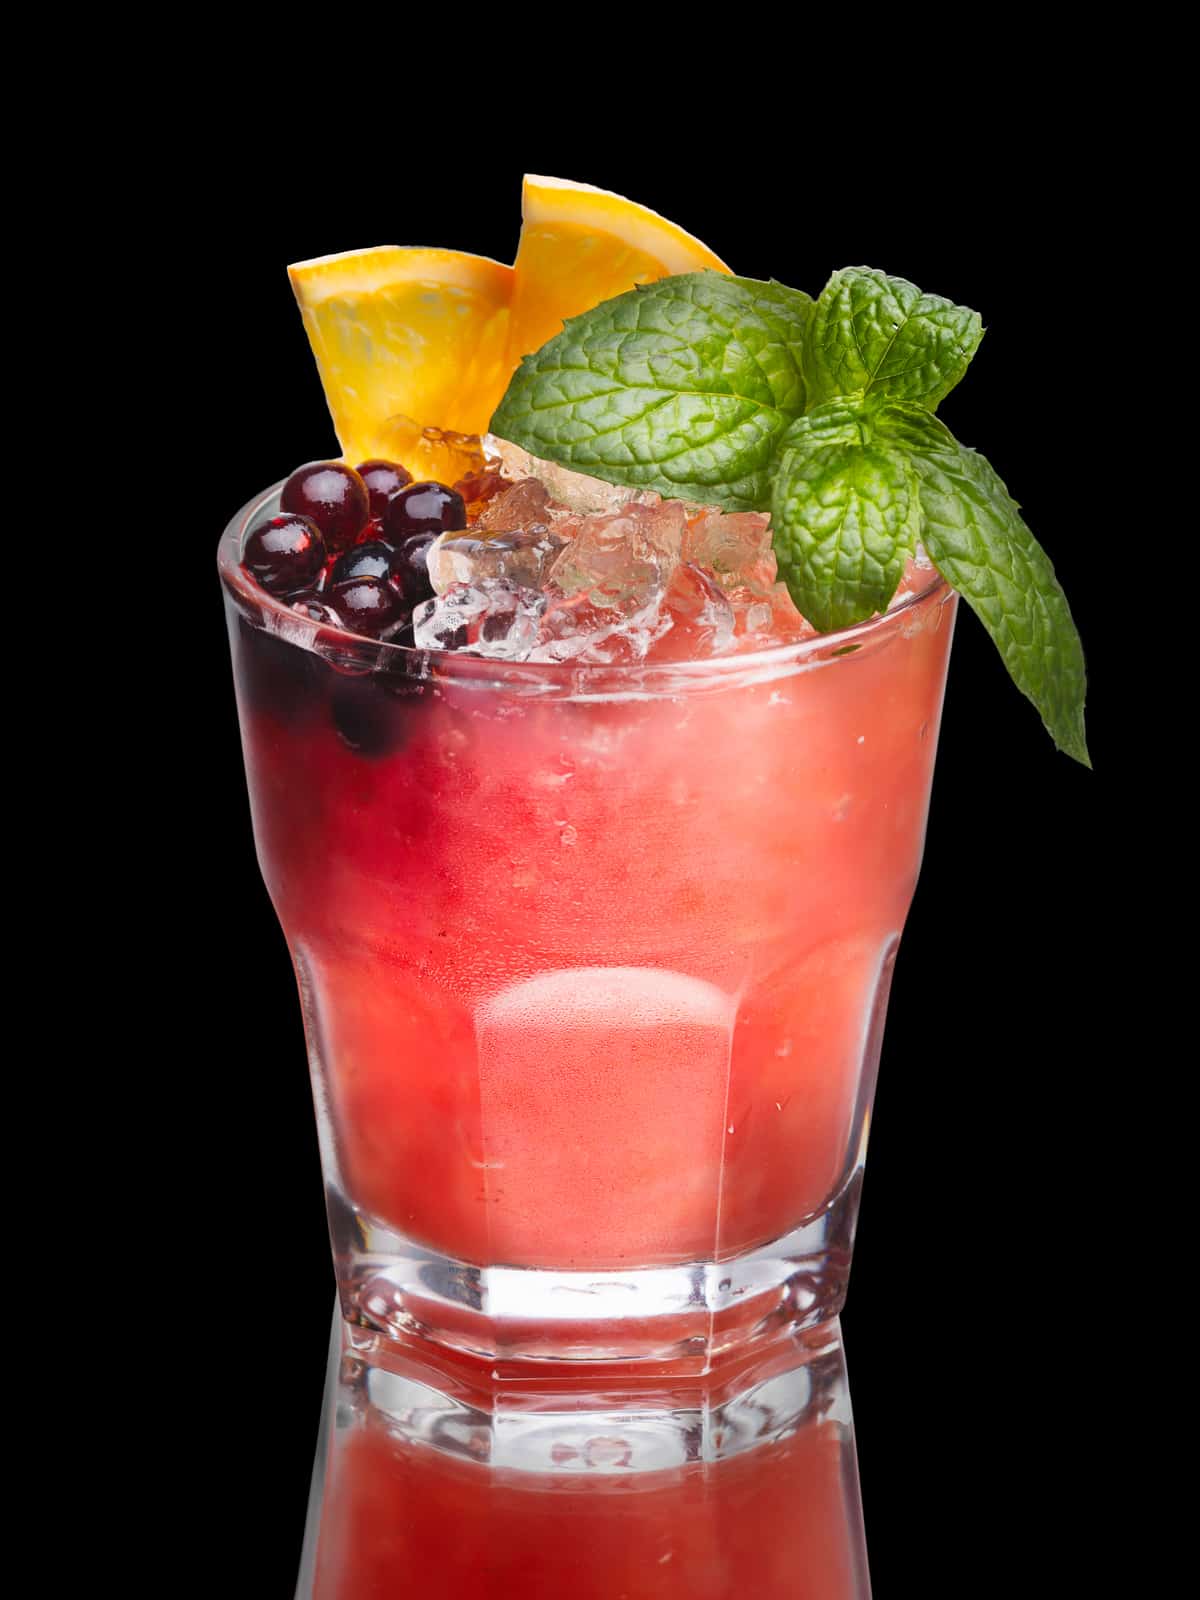 Georgia Peach cocktail